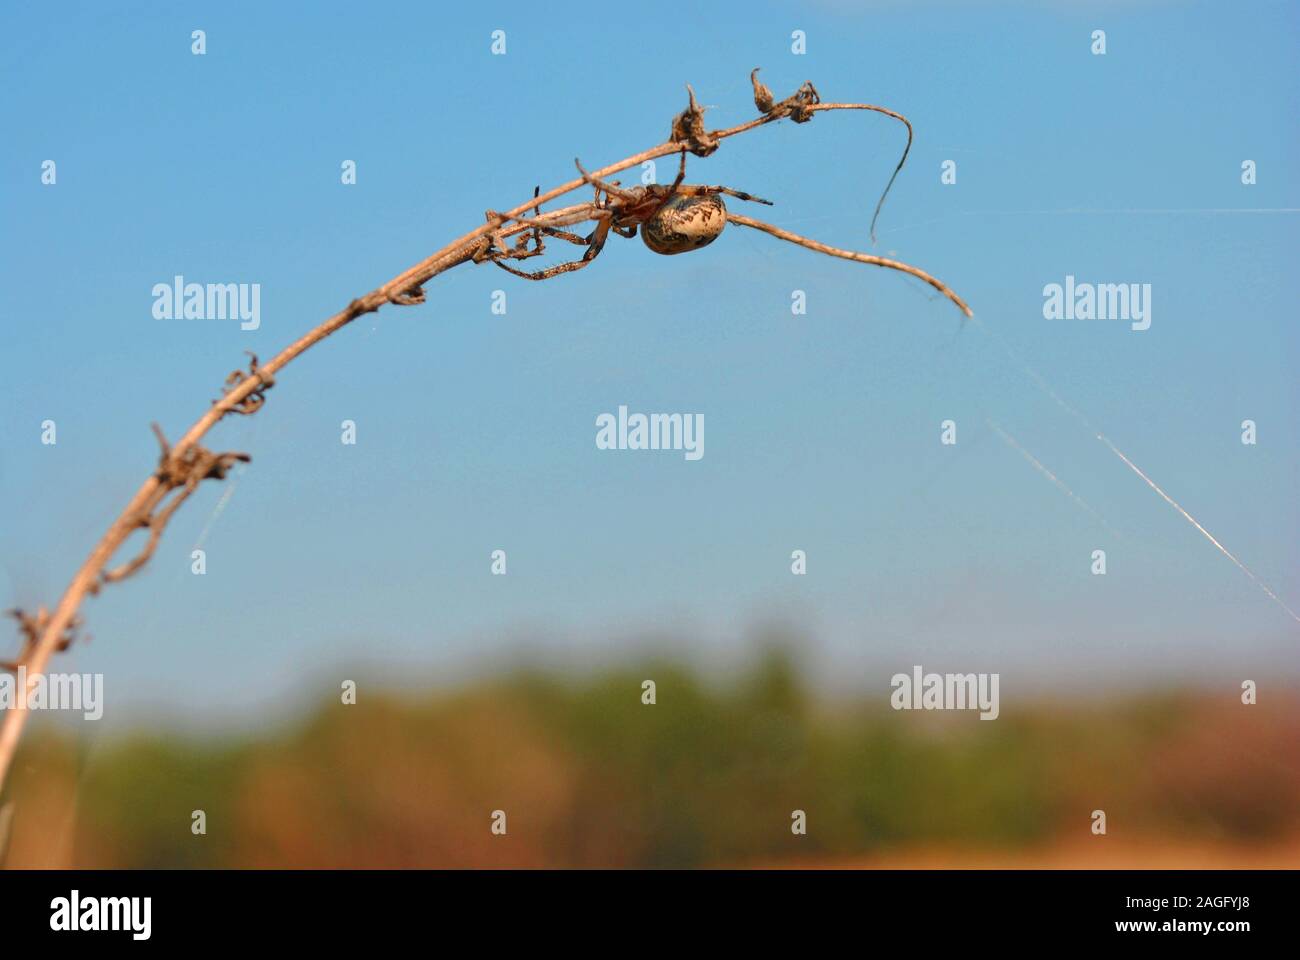 Araneus diadematus (giardino europeo spider, diadema spider, cross spider, incoronato orb weaver) nel web su ramoscello, sullo sfondo di un cielo blu e alberi sfocato Foto Stock